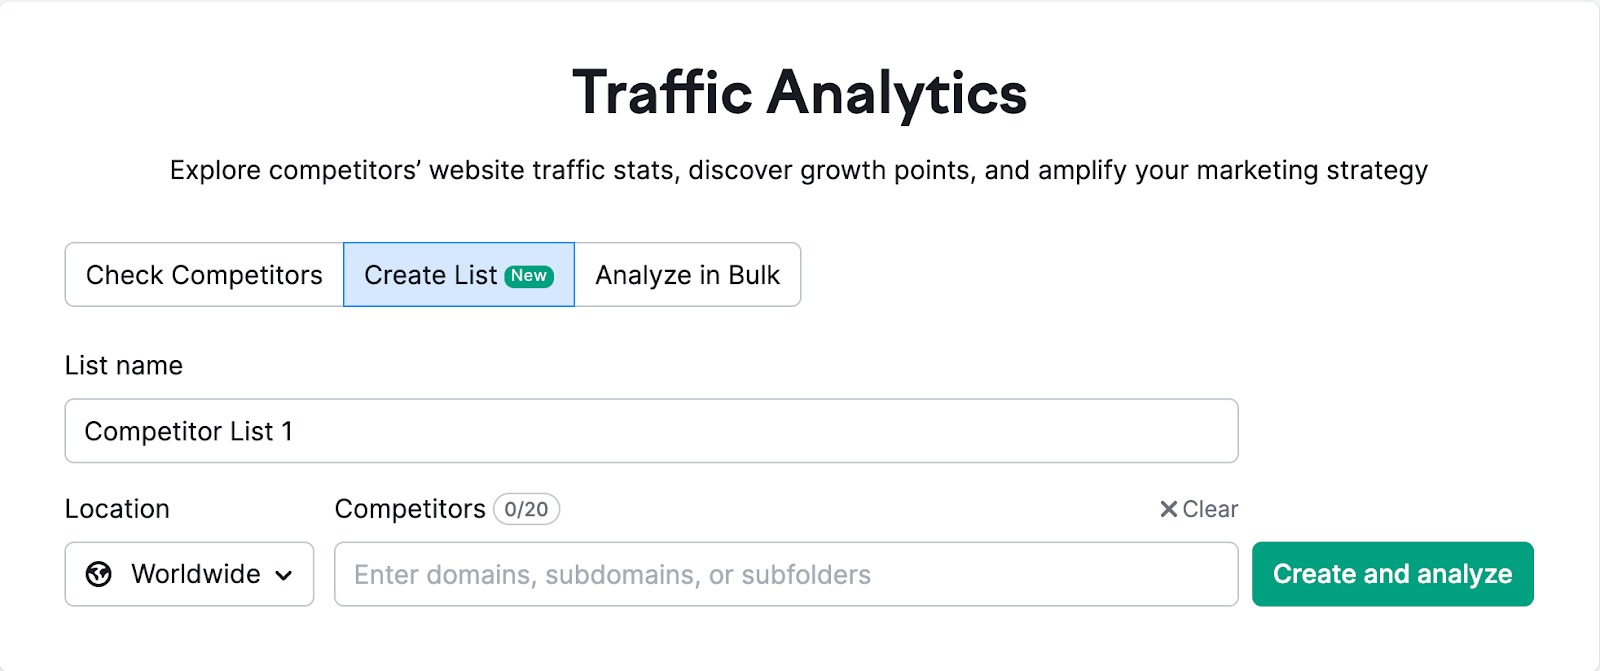 Traffic Analytics Create List option